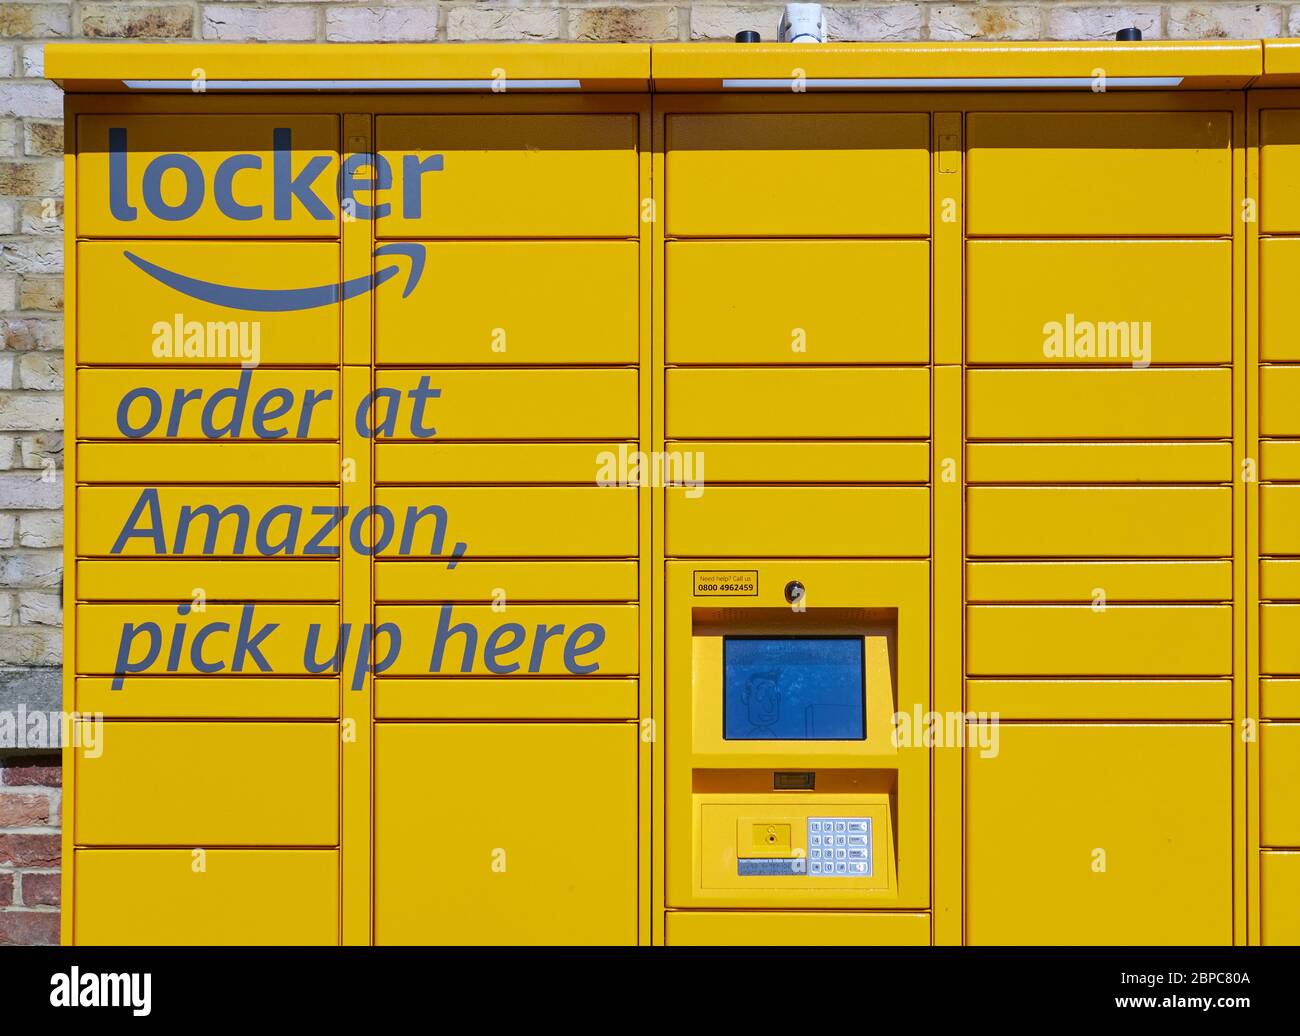 Amazon locker ist ein Self-Service-Kiosk für sichere Online-Bestellungen, Amazon.com, Inc wurde von Jeff Bezos im Juli 1994 gegründet Stockfoto